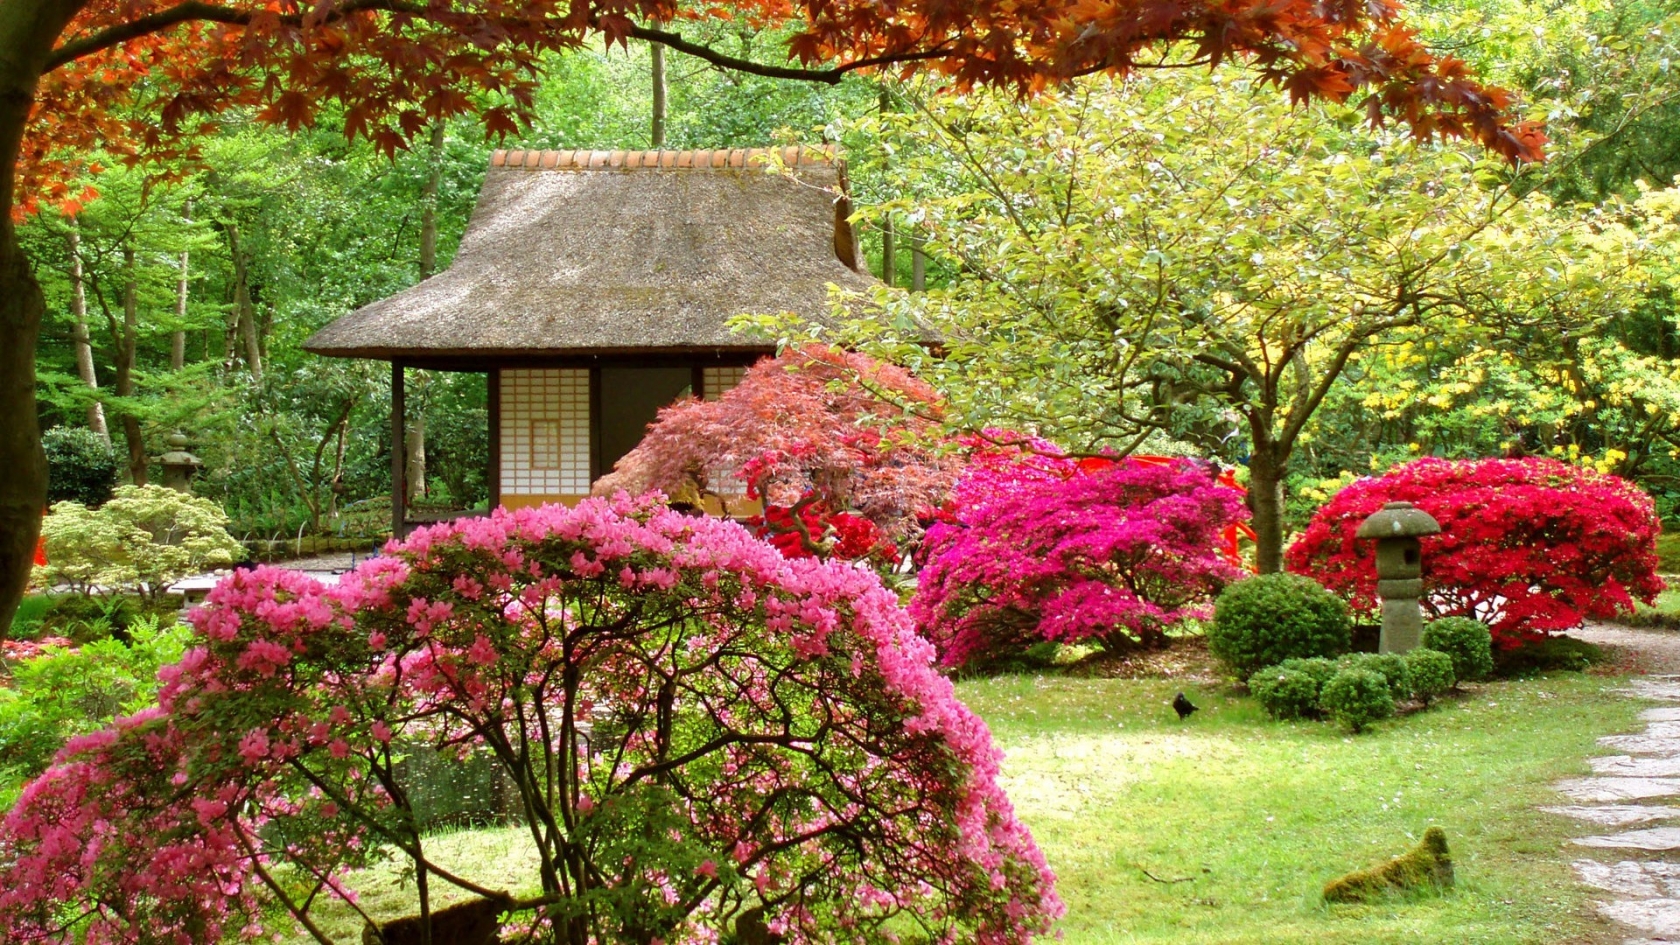 Spring Japanese Garden for 1680 x 945 HDTV resolution